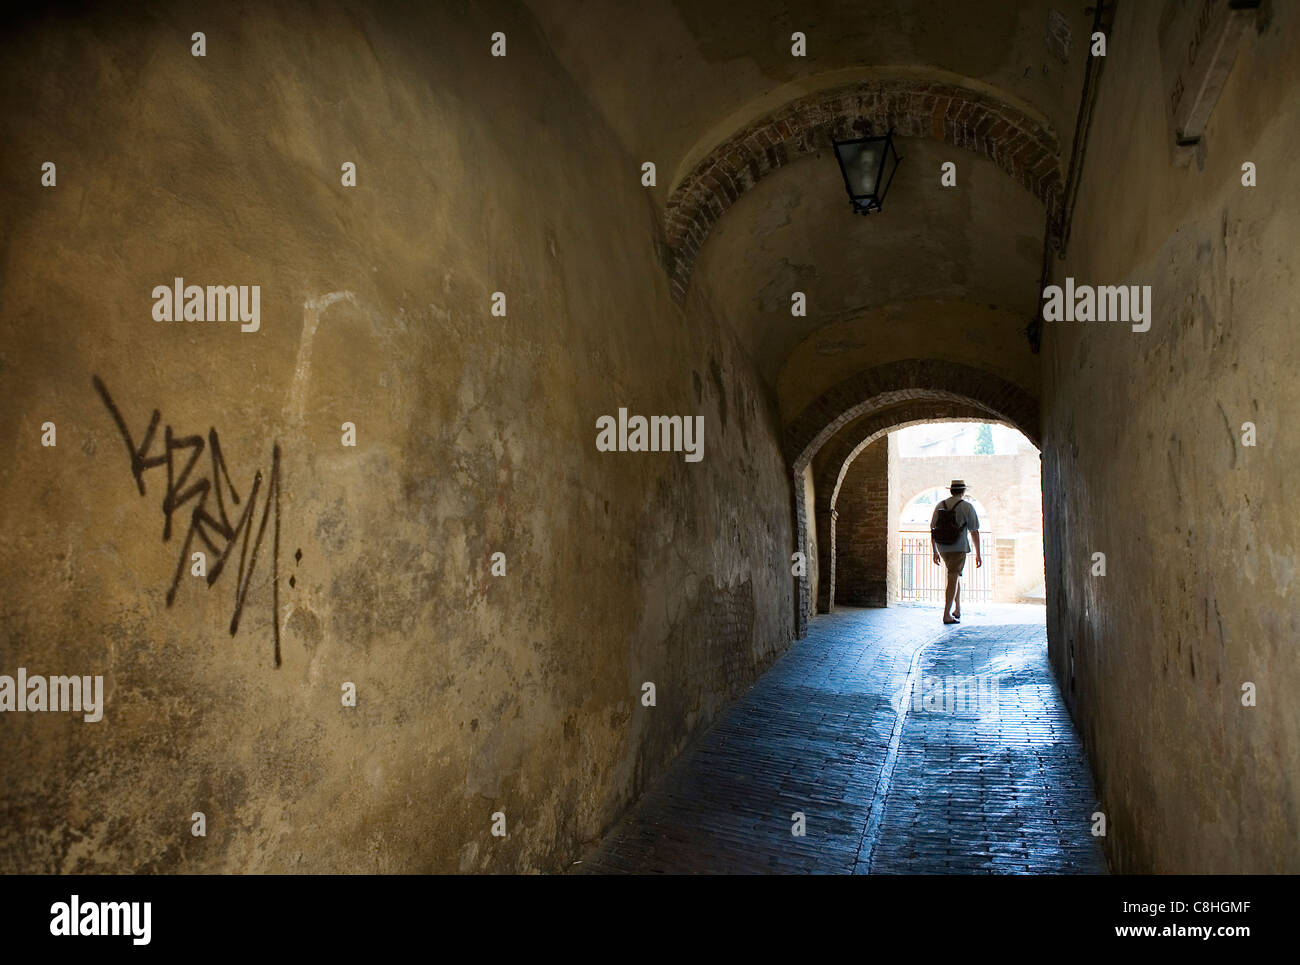 Un backpacker passeggiate attraverso un tunnel con graffiti, Siena, Italia Foto Stock